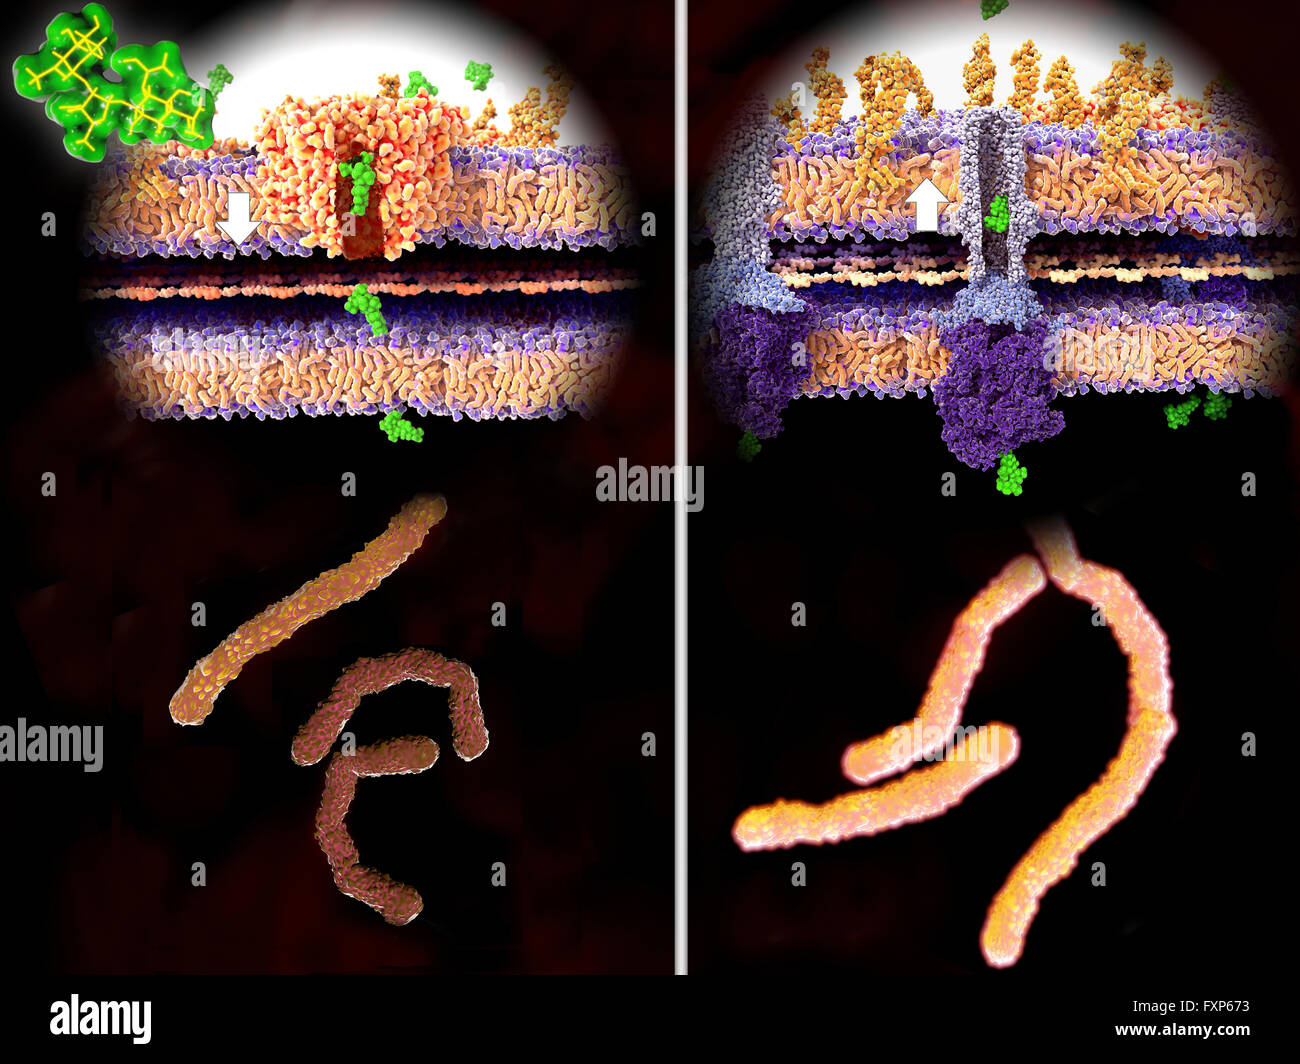 La resistenza agli antibiotici. Illustrazione del meccanismo molecolare della resistenza agli antibiotici. A sinistra, un antibiotico (streptomicina, verde) passa attraverso la parete batterica (freccia bianca) attraverso la proteina del canale porina, causando la morte dei batteri (in basso a sinistra). A destra, i batteri gram-negativi hanno sviluppato una resistenza e ad espellere la streptomicina molecole attraverso una proteina di membrana pompa (freccia bianca), in questo caso la TolC pompa di efflusso (viola-blu struttura). La resistenza agli antibiotici può avvenire nel tempo attraverso l'abuso di farmaci antibiotici. Microbi resistenti richiedono alternativa Foto Stock